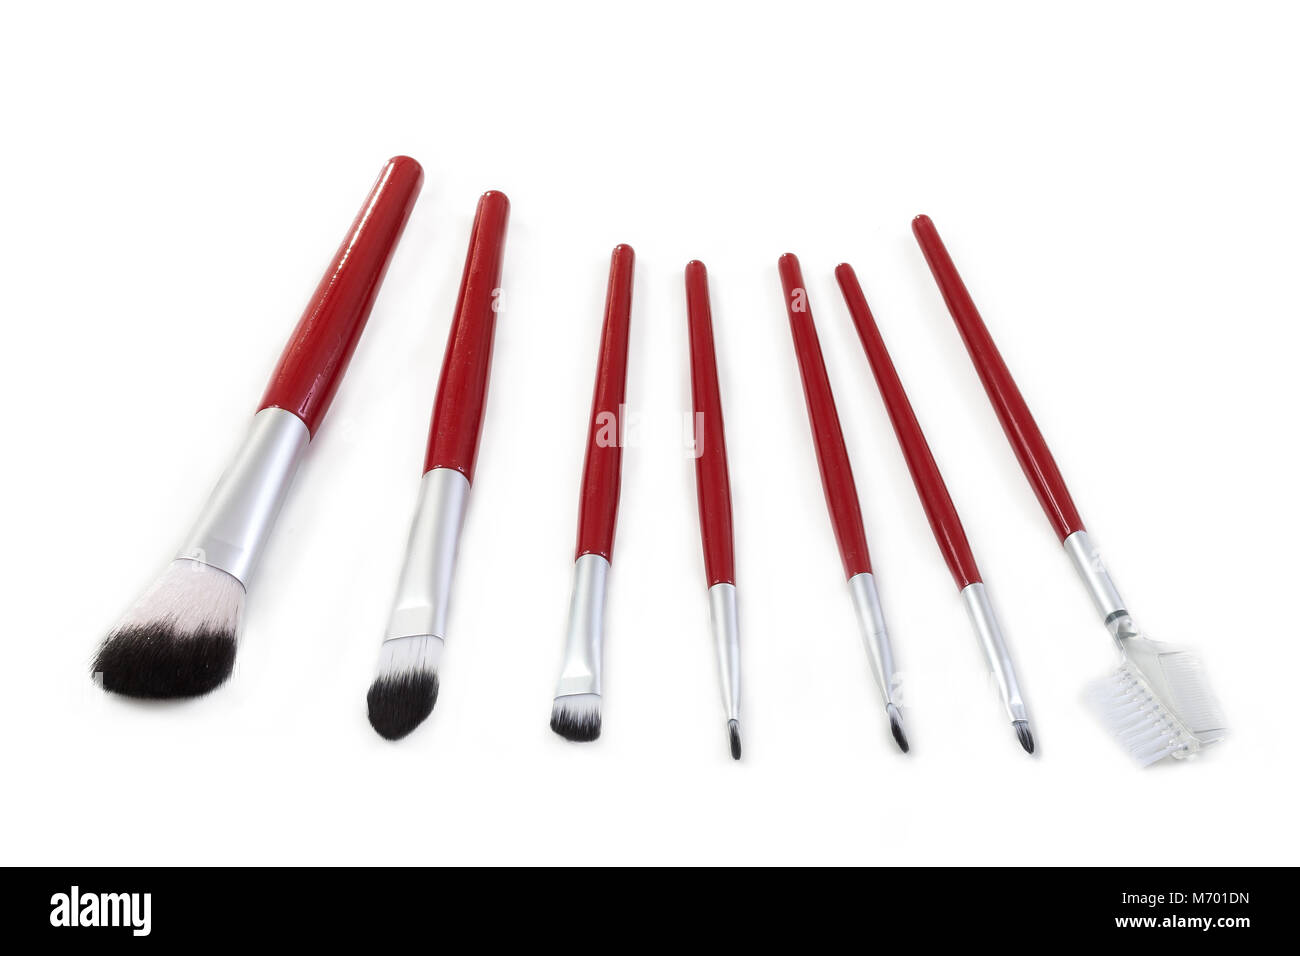 horizontal image pf make up brush set brush collection on a white background Stock Photo